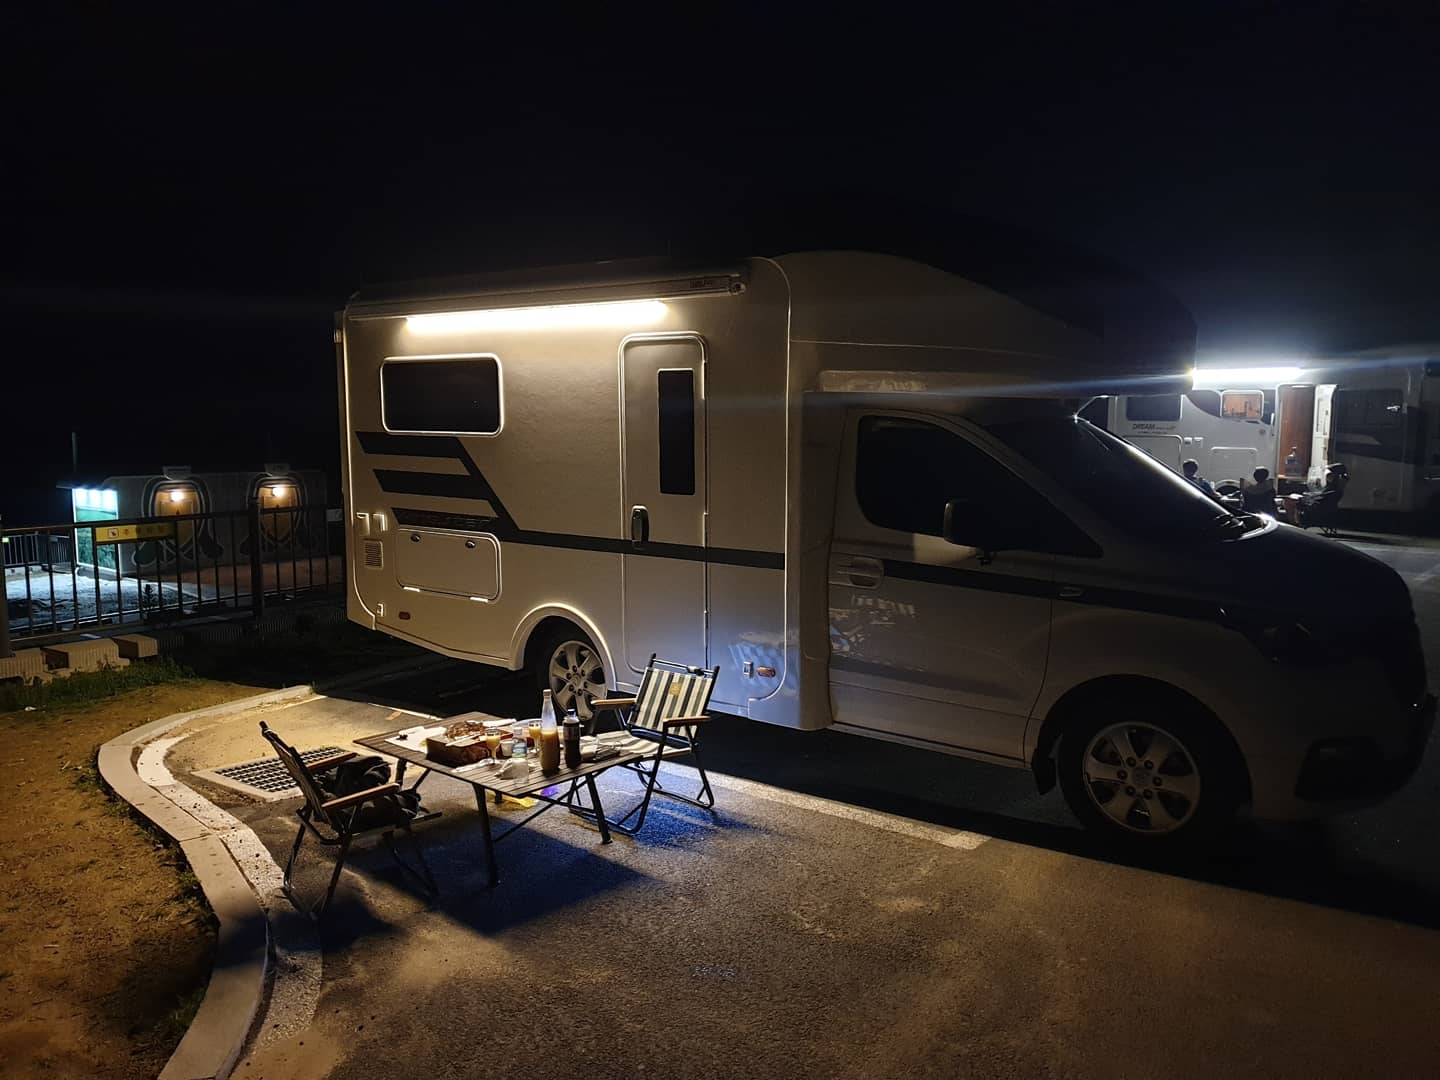 GS렌트카 전주점 그랜드 스타렉스 모터홈 야간에 찍은 캠핑 사진